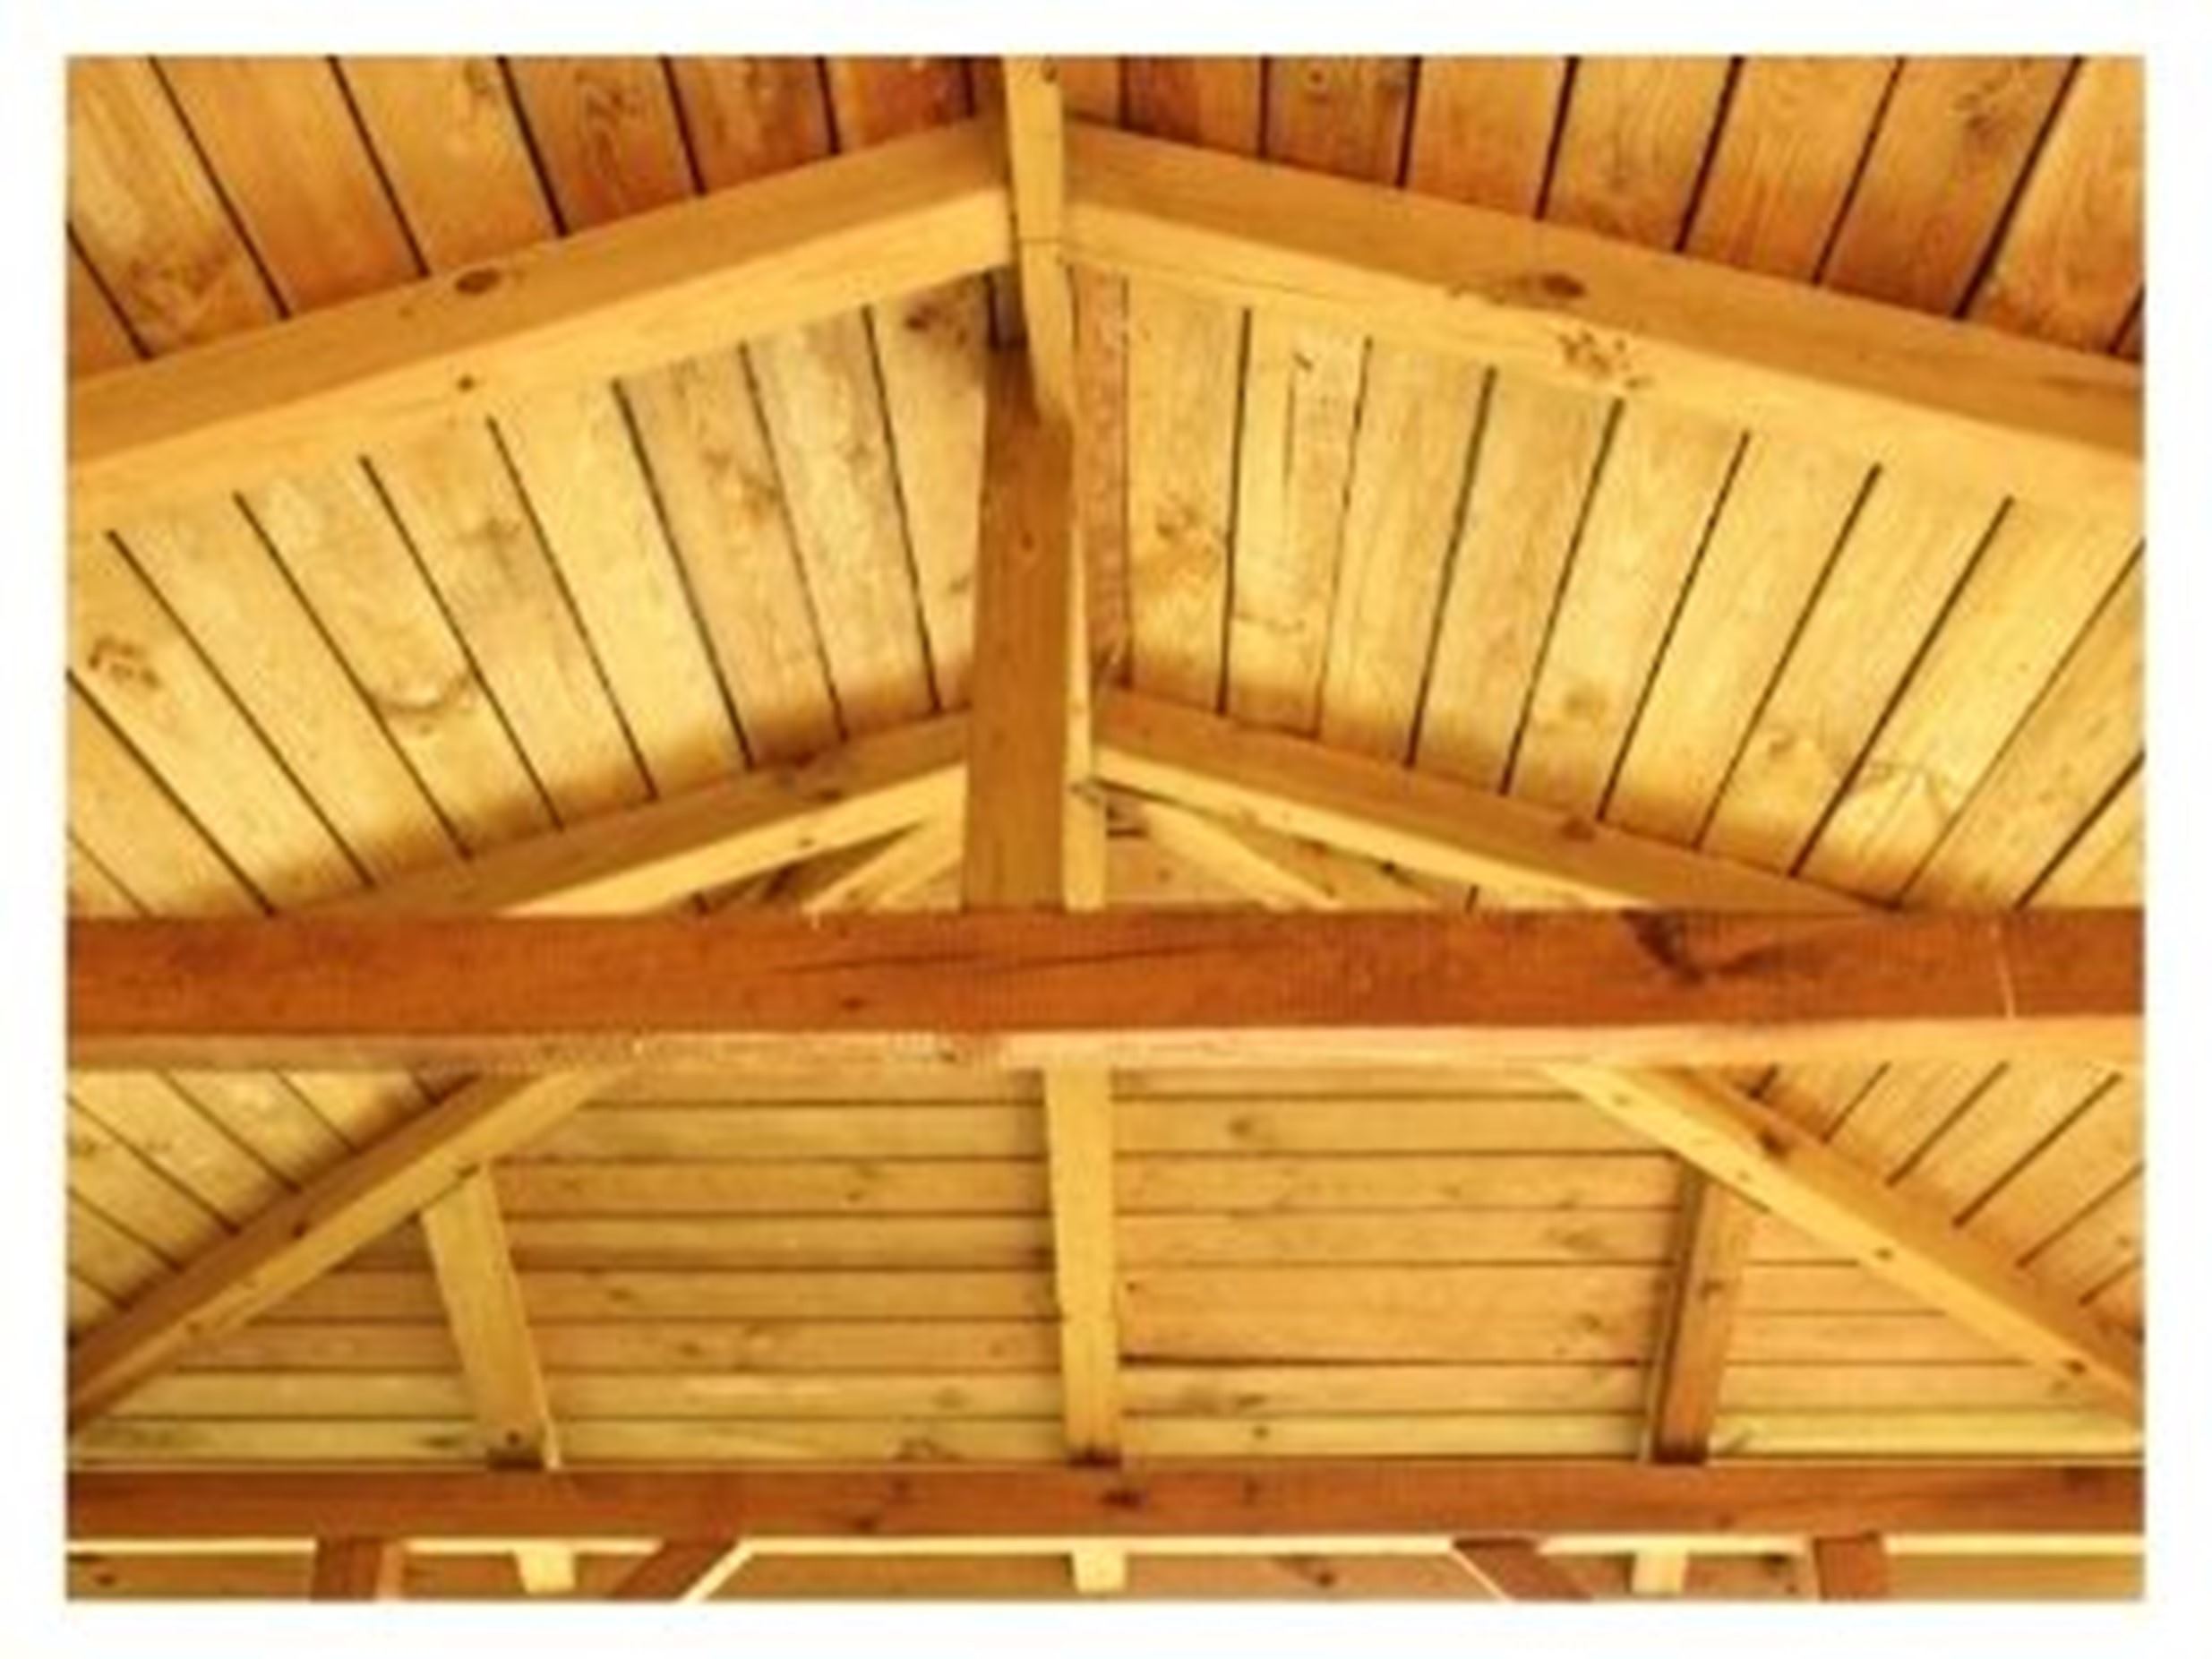 Importancia analizar estructuras de madera